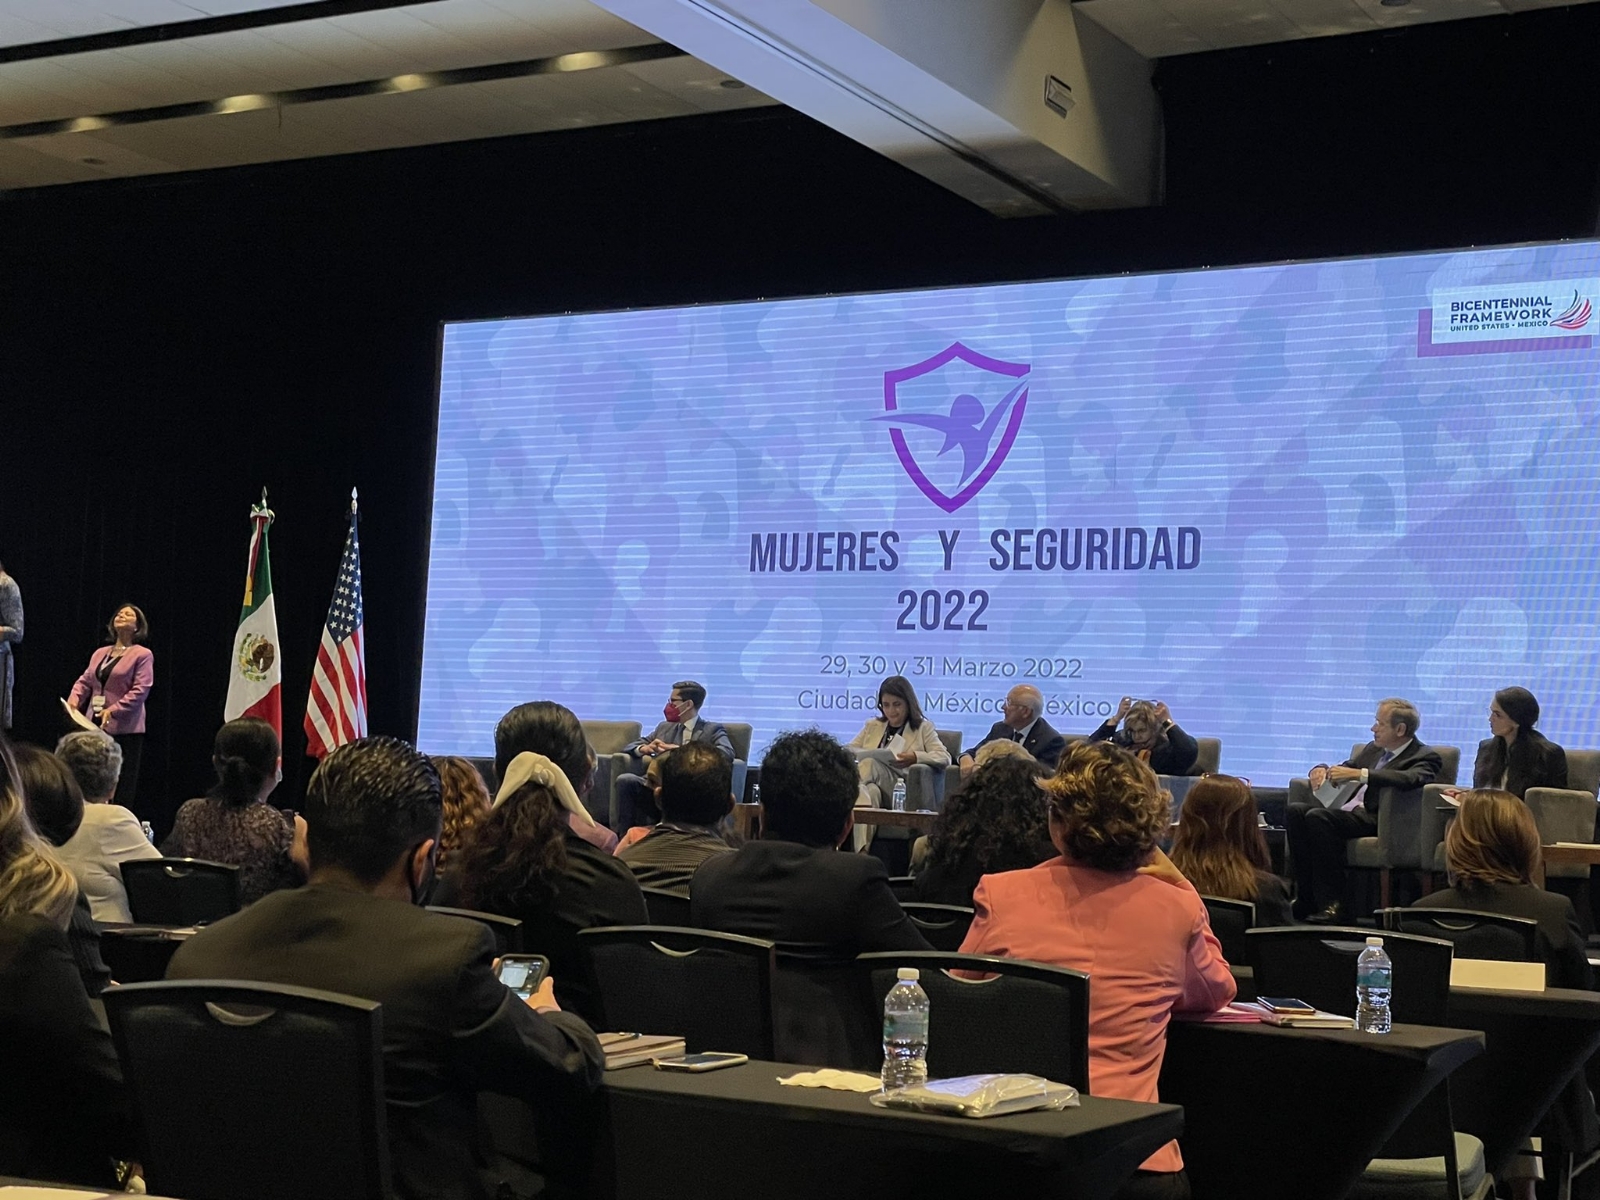 México y Estados Unidos inauguran la primera cumbre de mujeres y seguridad